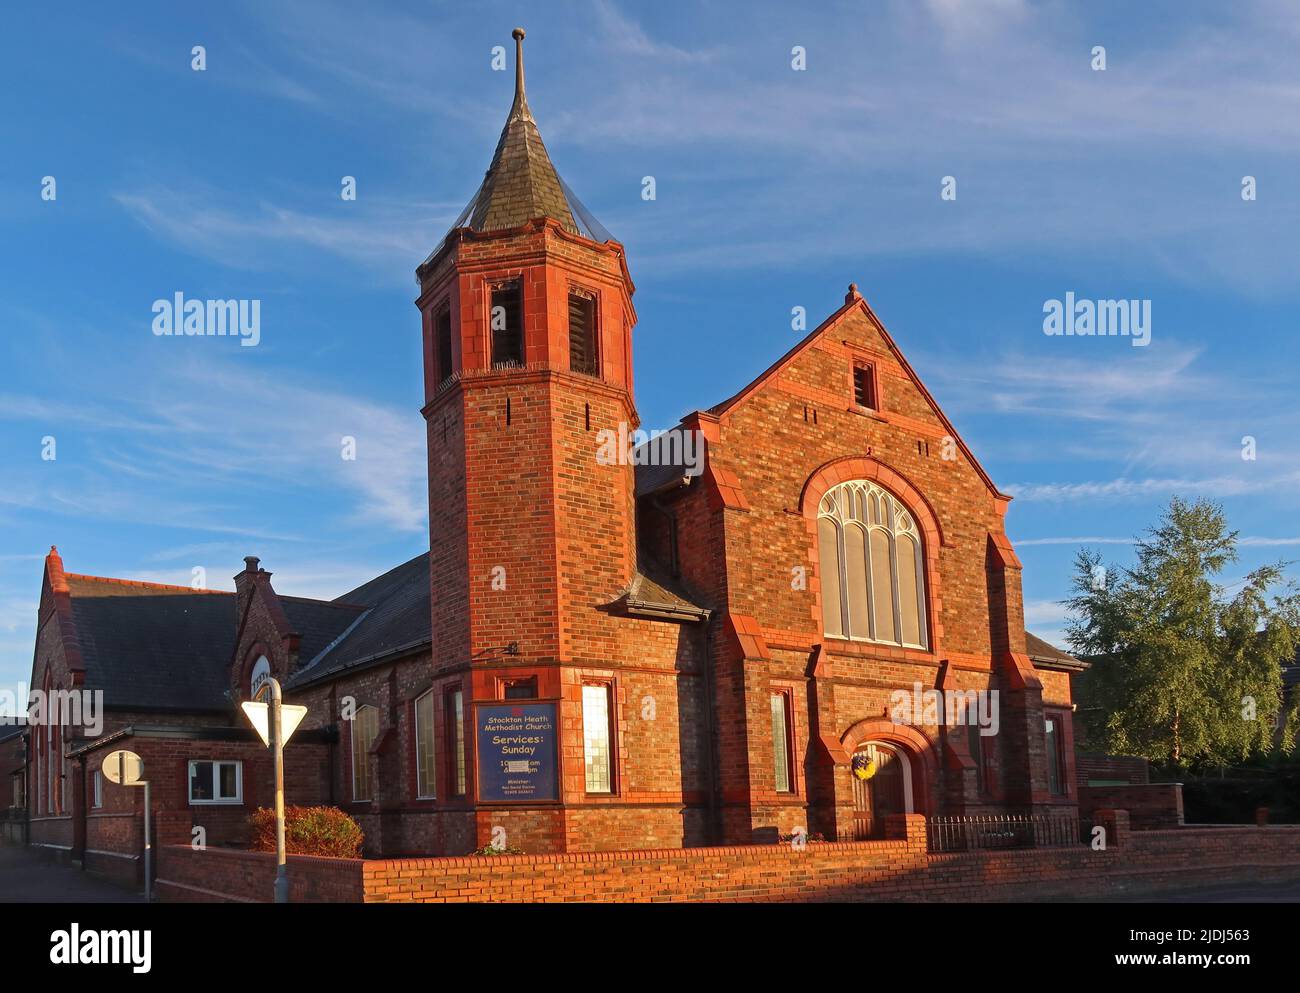 Stockton Heath Methodist Church, at sunset, 2 Heath St, Stockton Heath, Warrington, Cheshire, England, UK, WA4 6LP Stock Photo